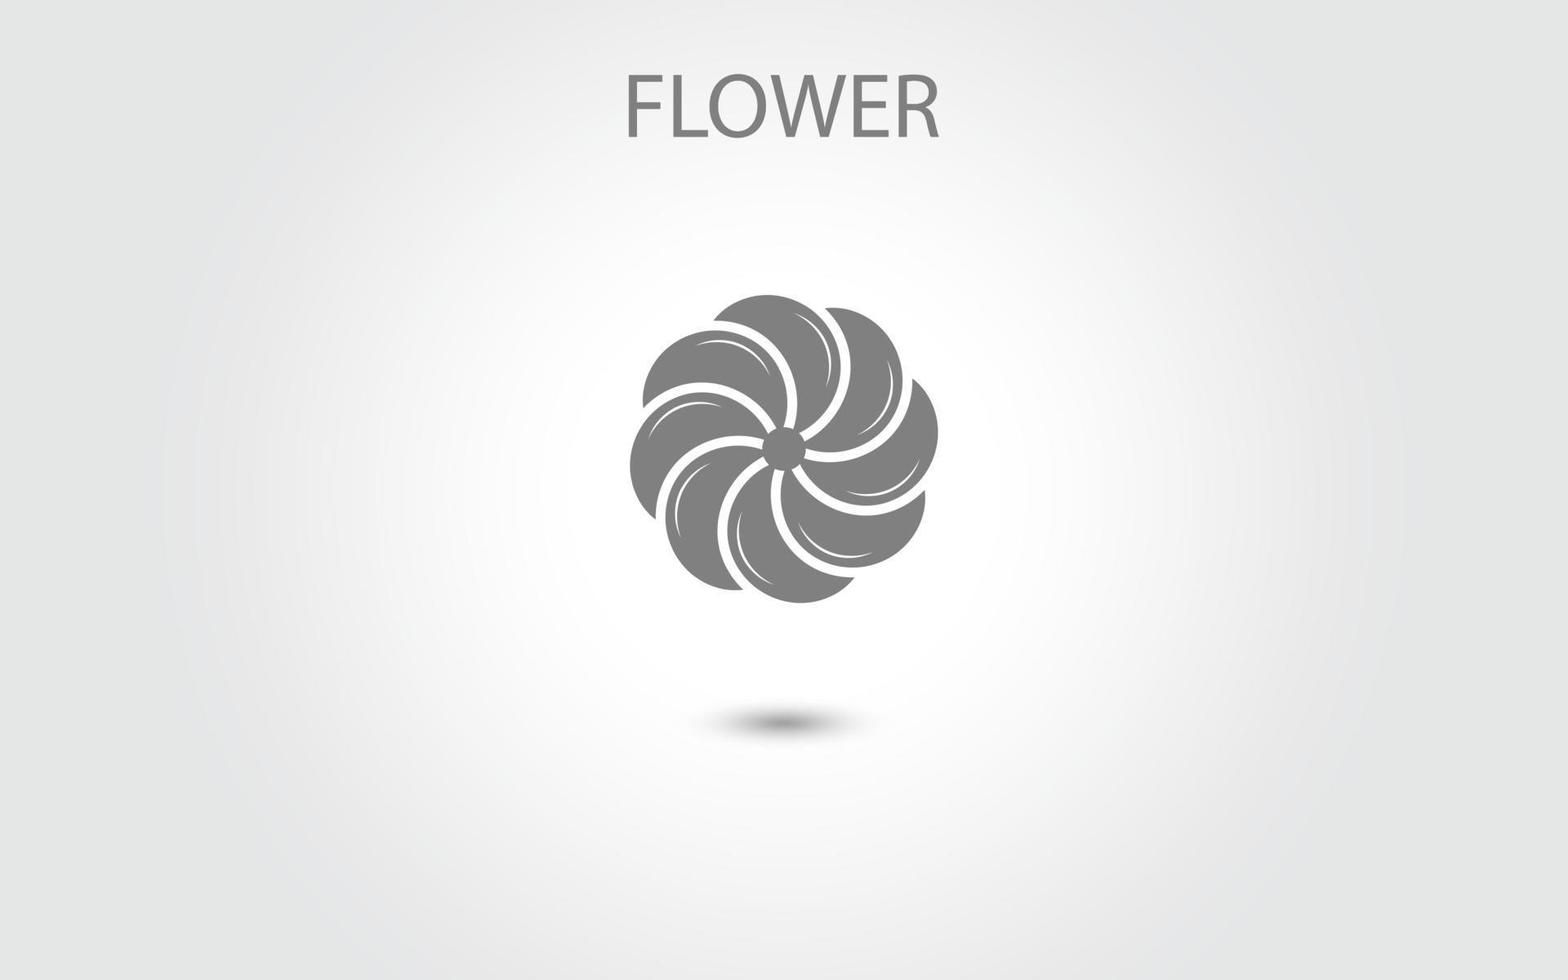 bloem pictogram vector geïsoleerd op een witte achtergrond, hand getrokken bloem pictogram illustratie, bloemen logo sjabloon, symbool natuurlijke pictogram